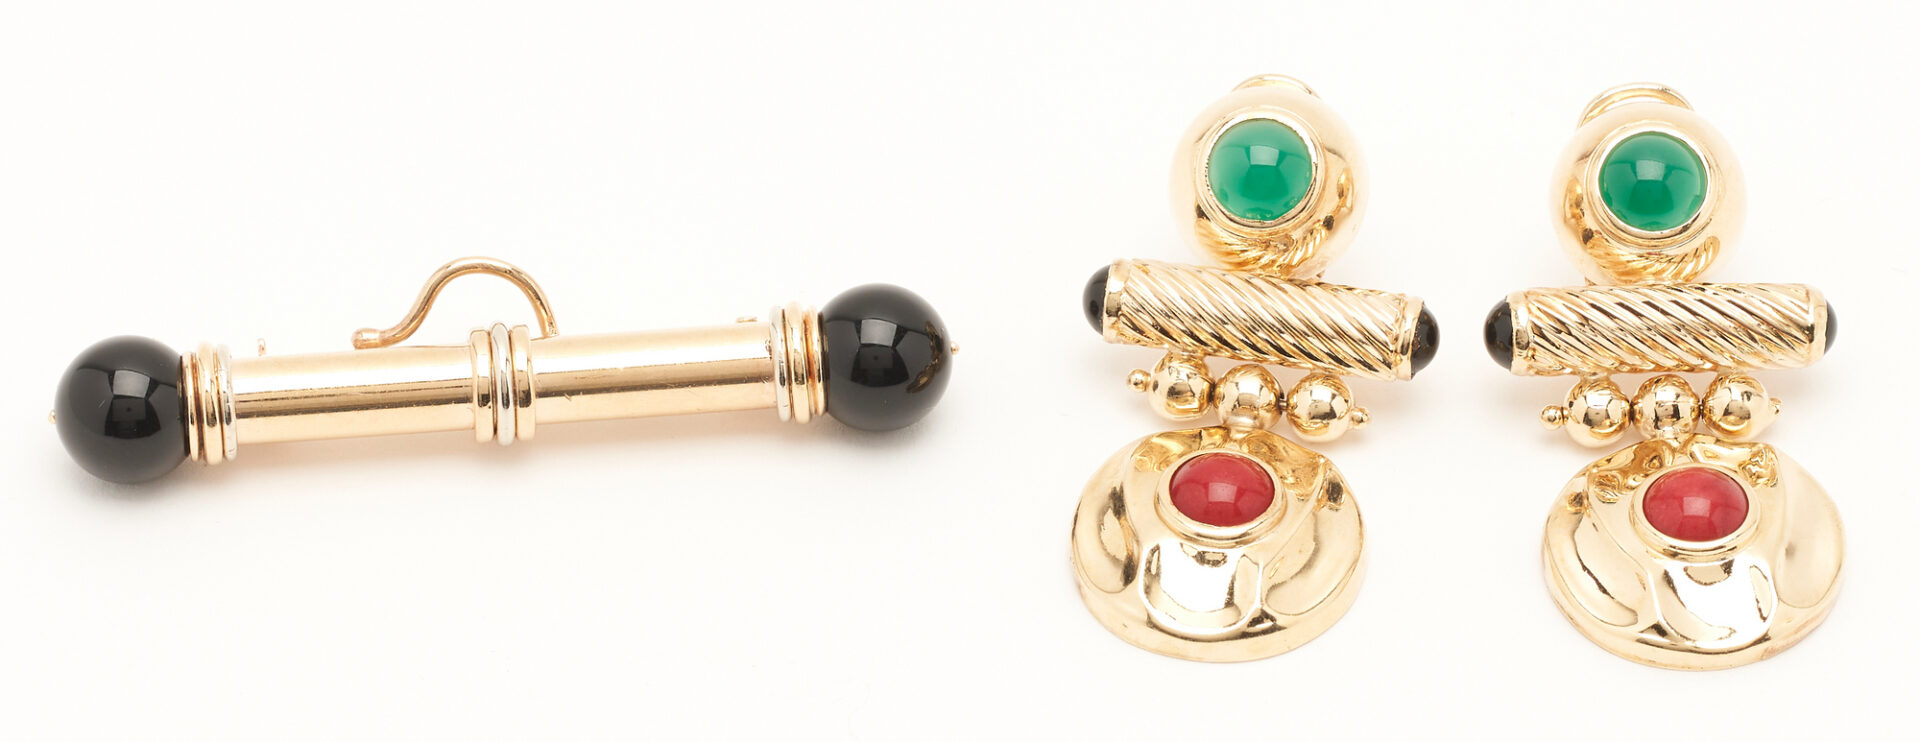 Lot 826: 14K Gold & Gemstone Brooch & 14k Gemstone Barbell Earrings